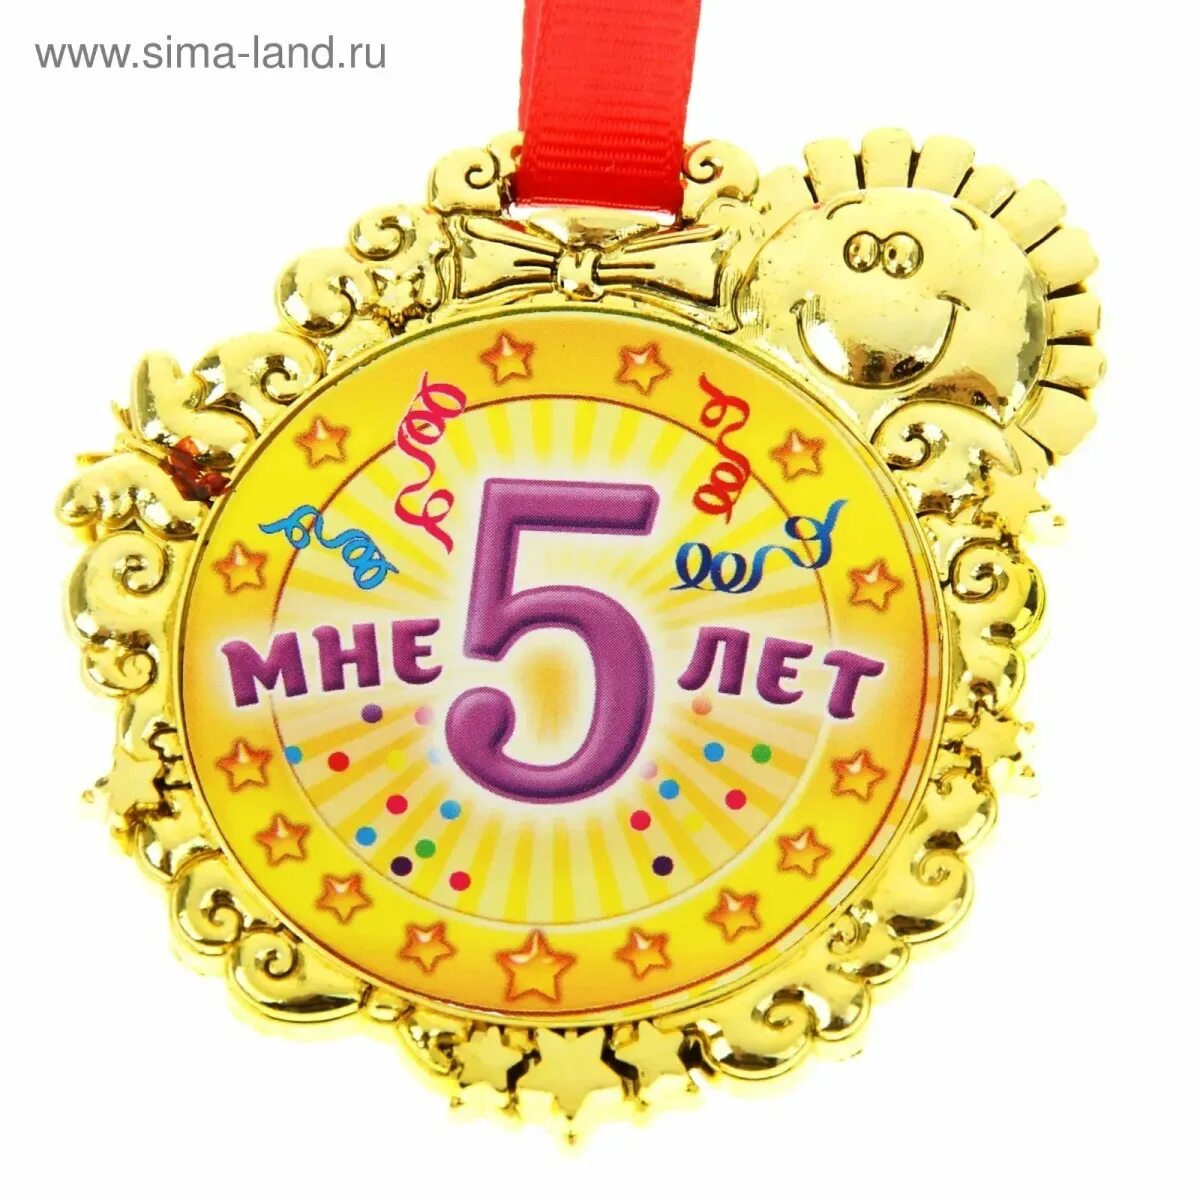 Медаль 5 лет. Медаль *с днем рождения*. Медаль с юбилеем. Медаль с днем рождения 5 лет. День рождения пятерки